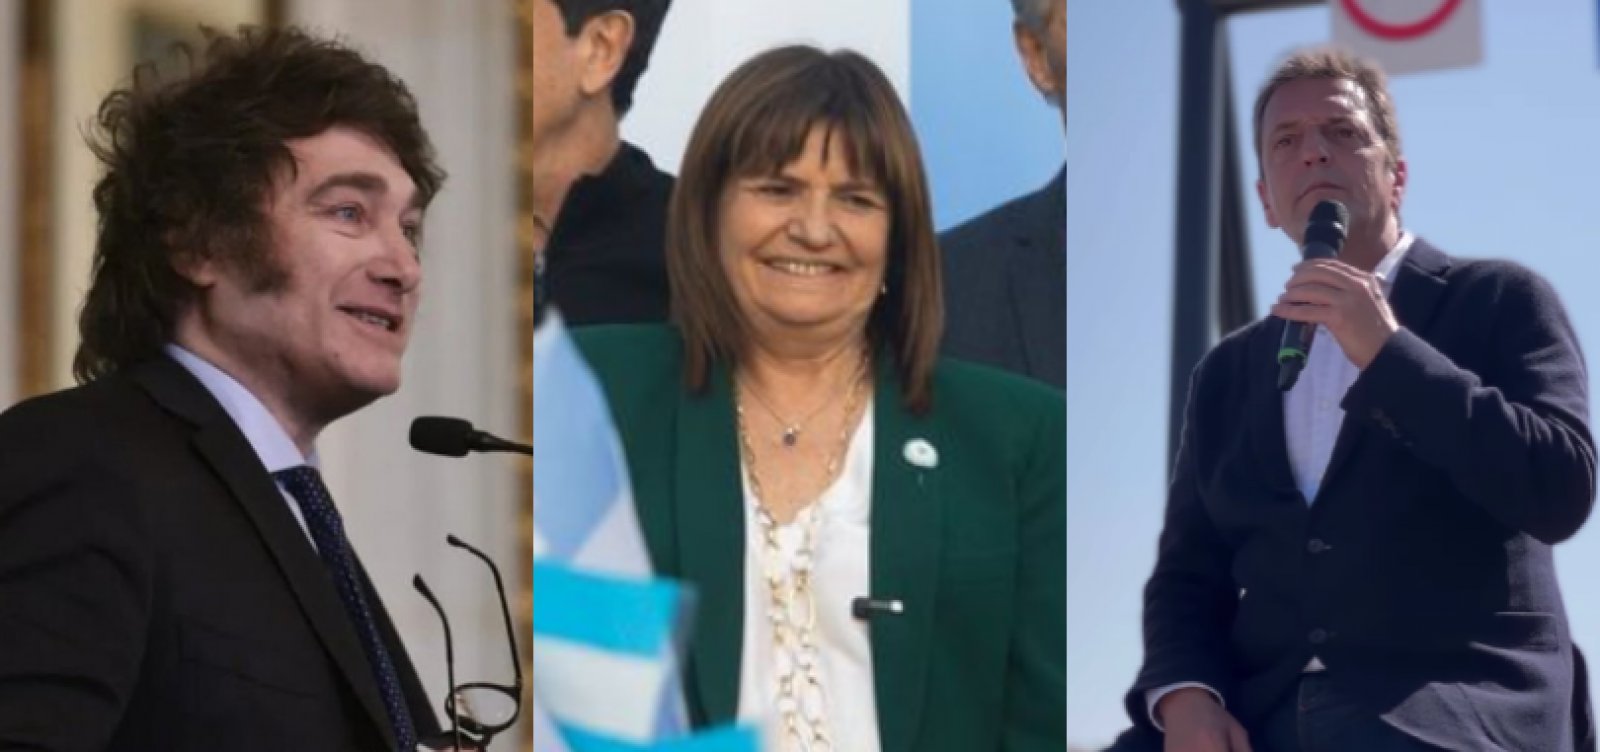 Eleição presidencial na Argentina acontece neste domingo; veja detalhes